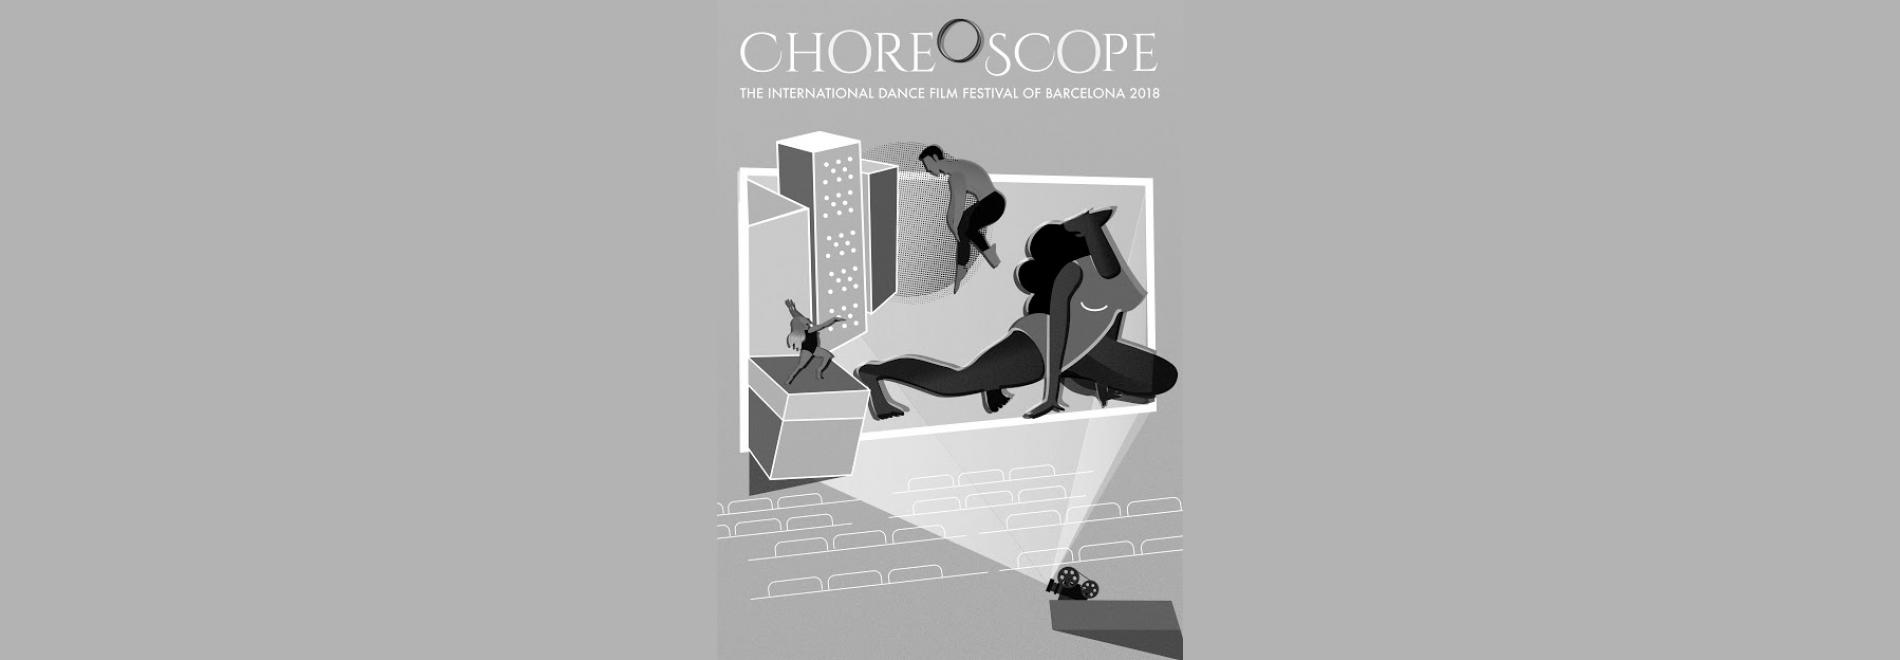 Choreoscope 2018